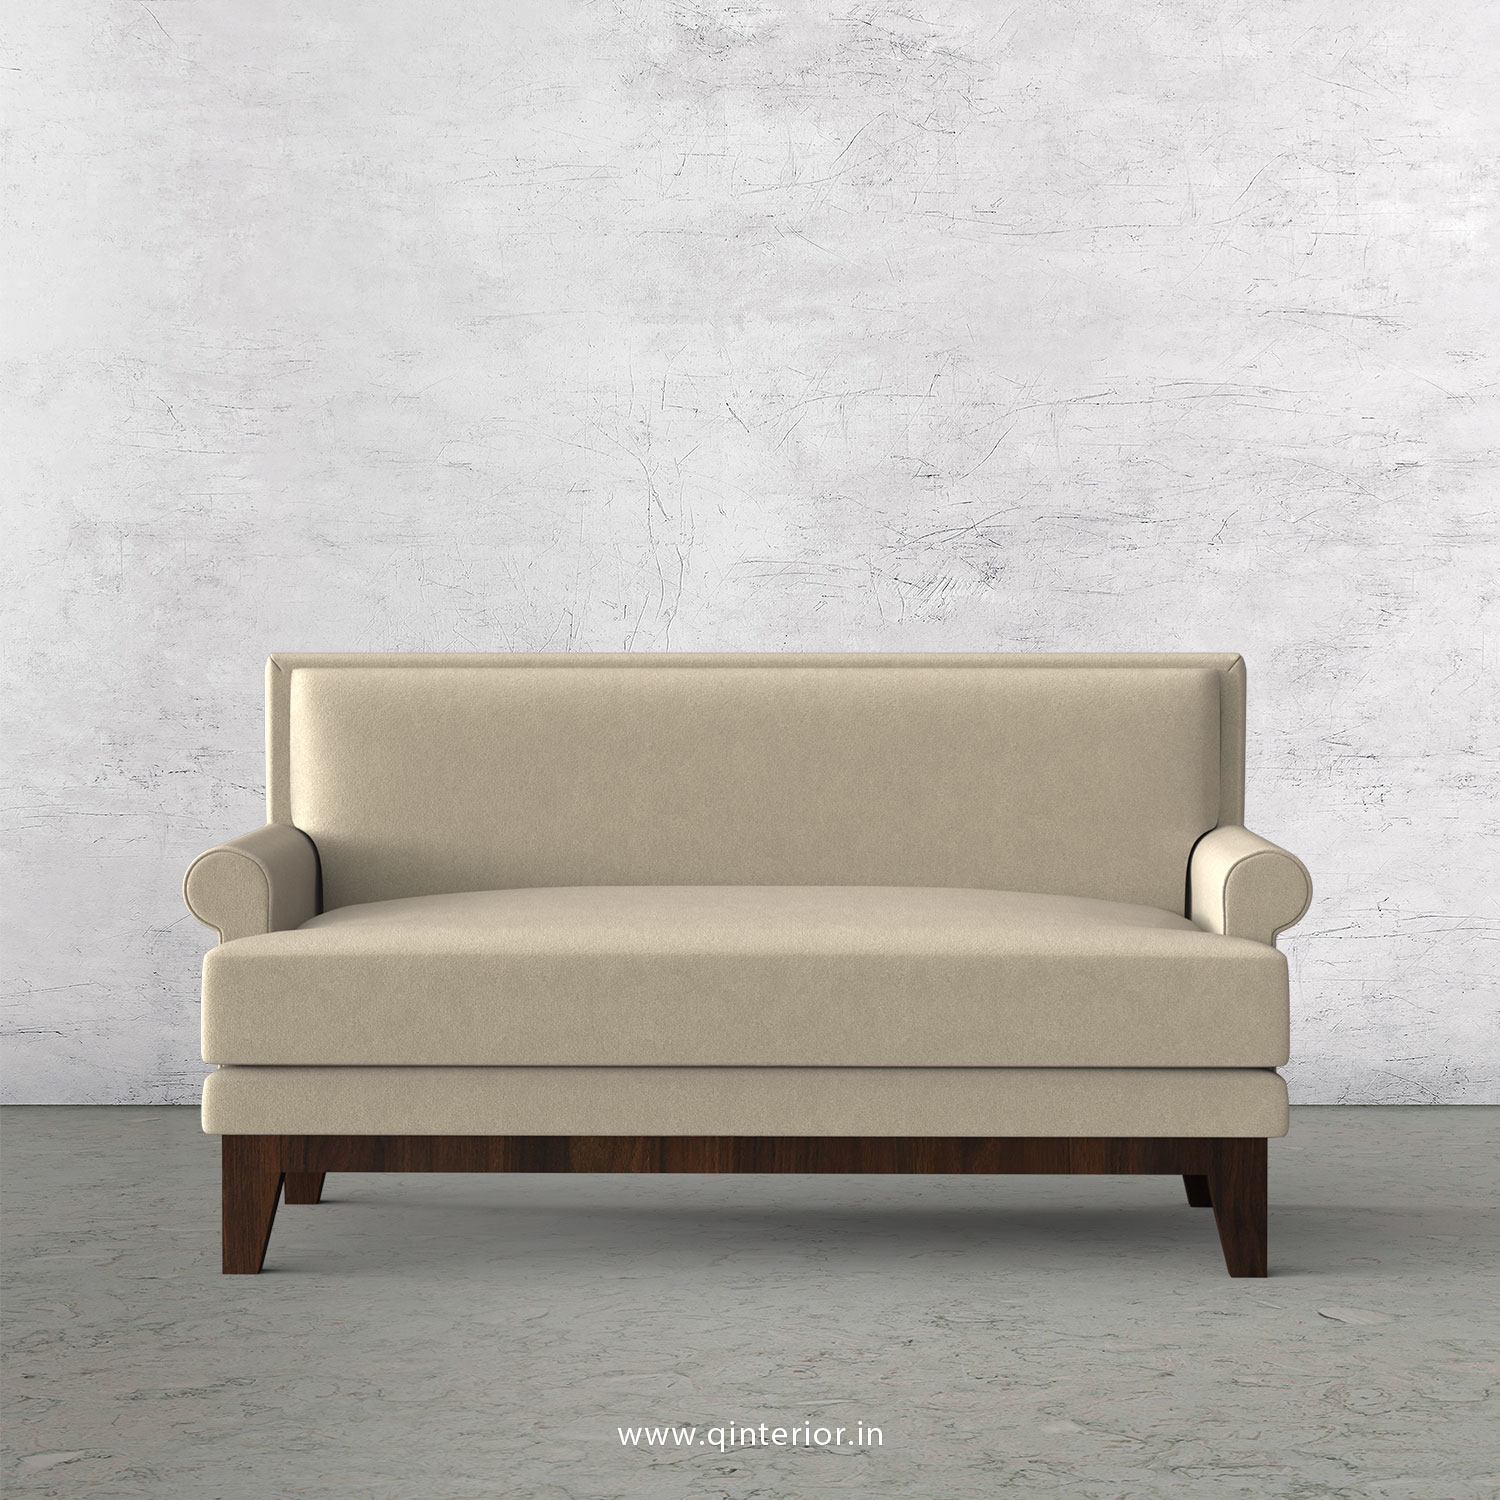 Aviana 2 Seater Sofa in Velvet Fabric - SFA001 VL01